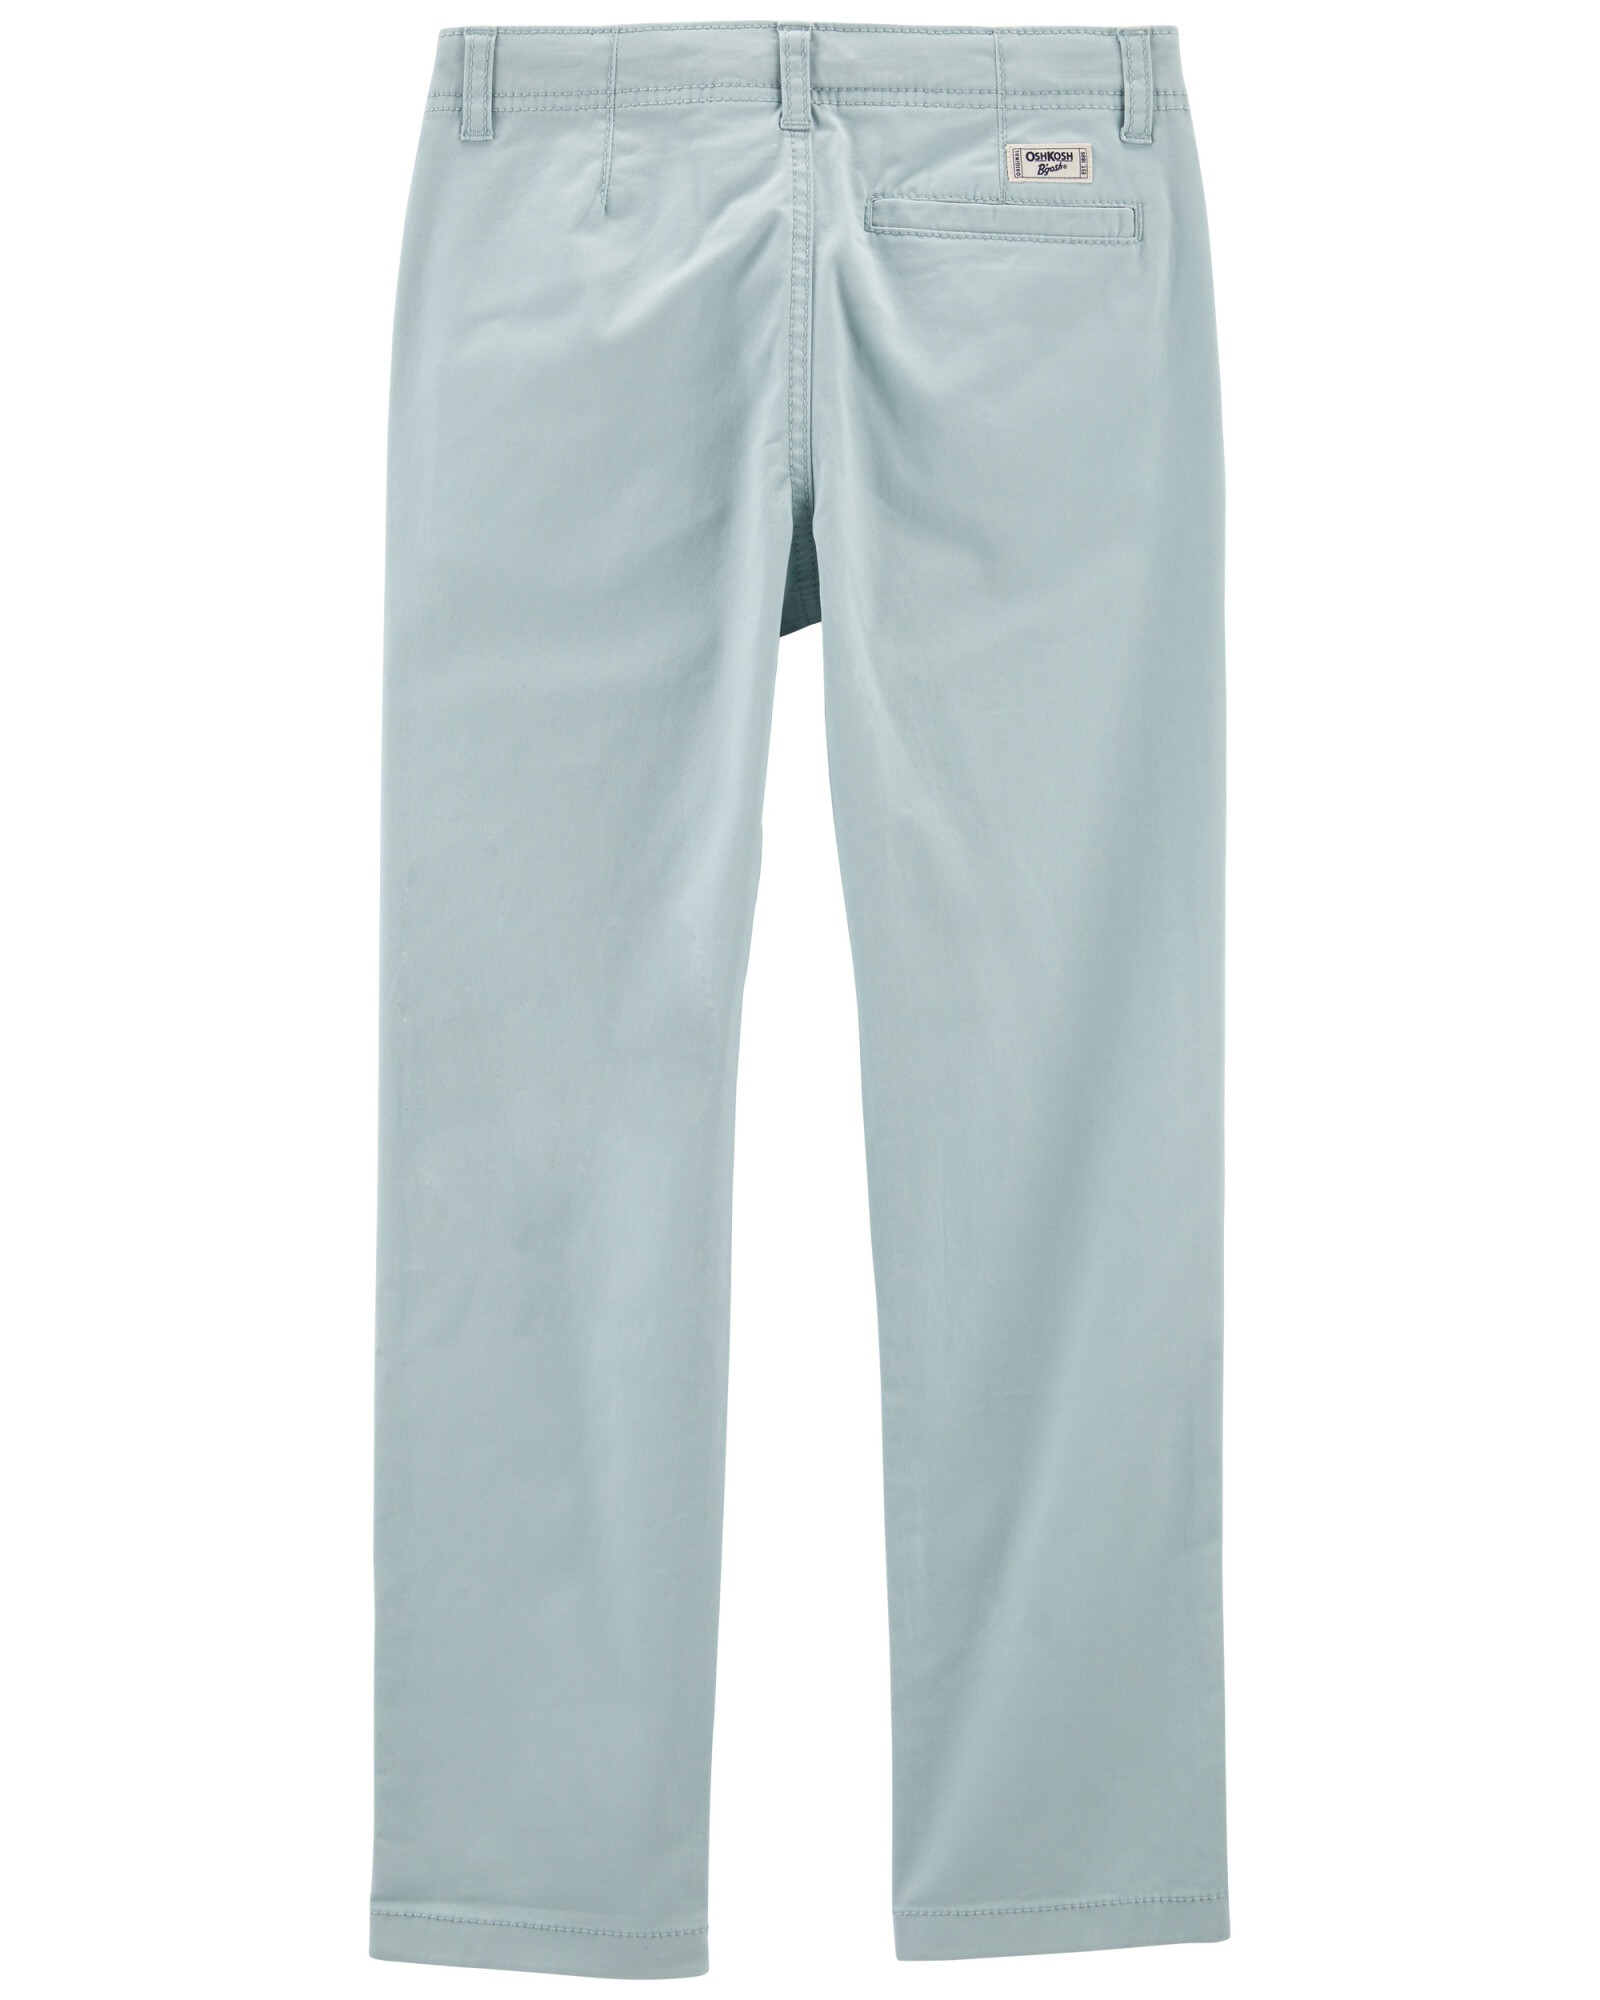 Pantalón de sarga elastizada recto. Talles 6-14 Sin color